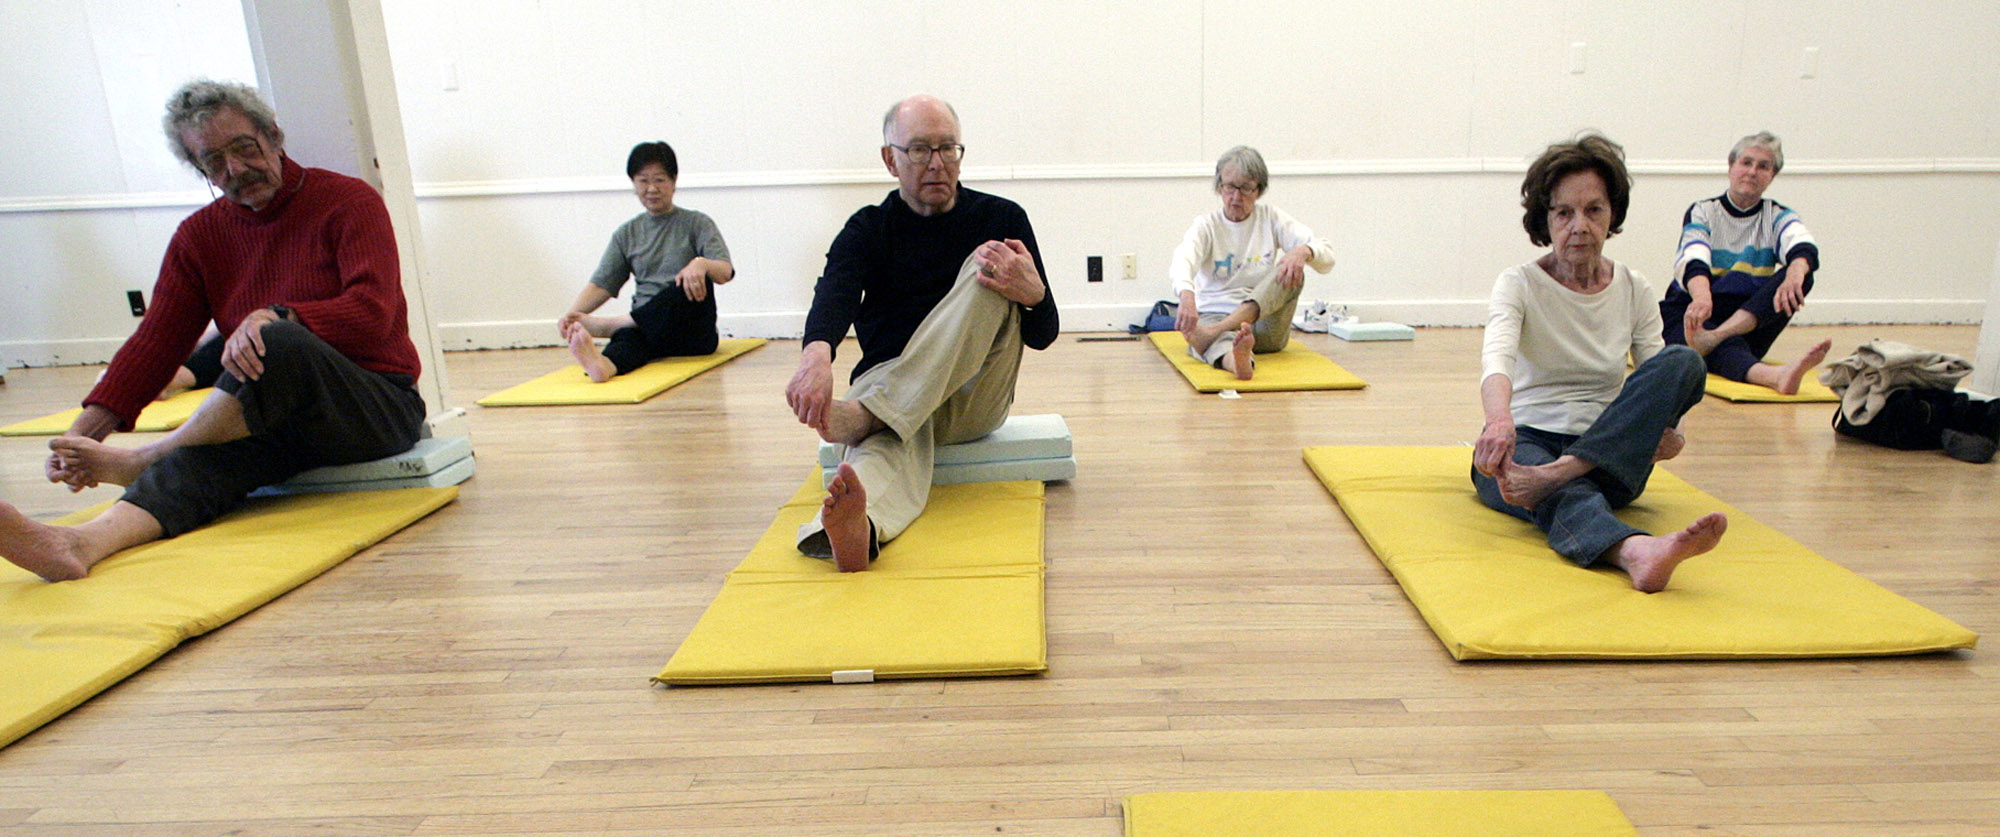 senior citizens practicing yoga